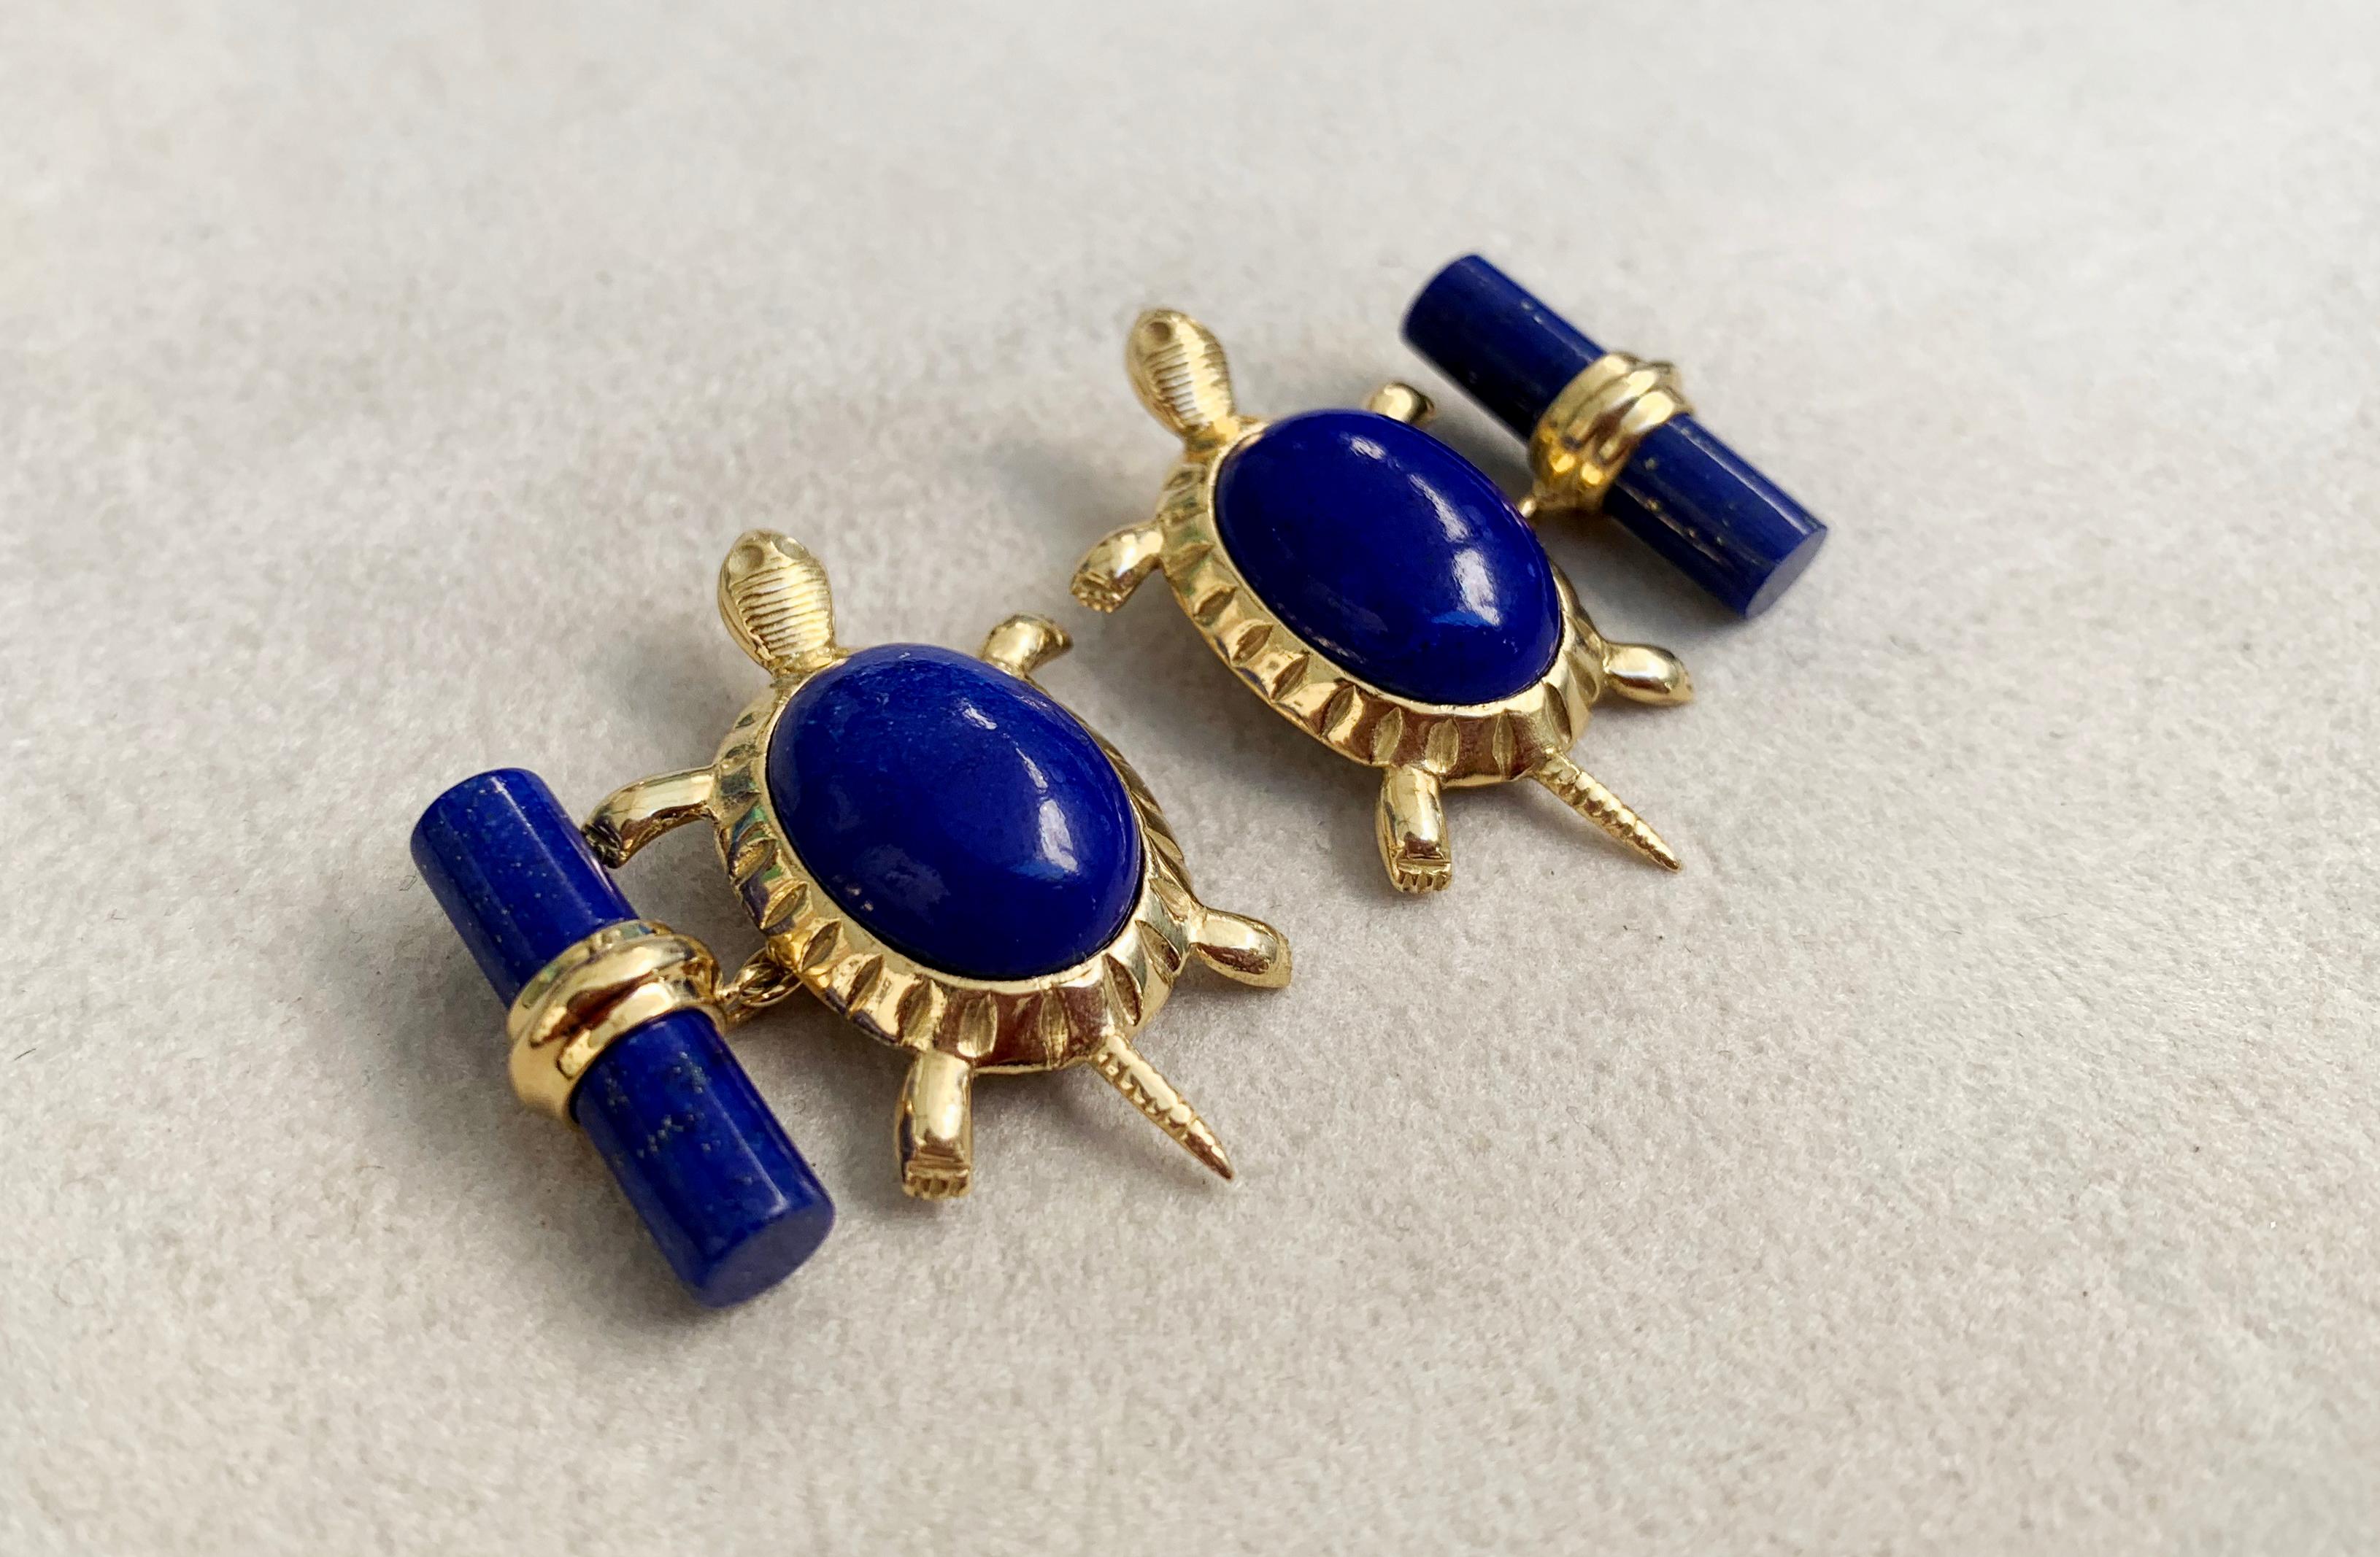 Ces boutons de manchette uniques associent le bleu profond du lapis-lazuli à la chaleur de l'or jaune 18 carats. 
Le métal précieux est utilisé pour réaliser le poteau et la monture de la face avant en forme de pattes et de queue de tortue, tandis